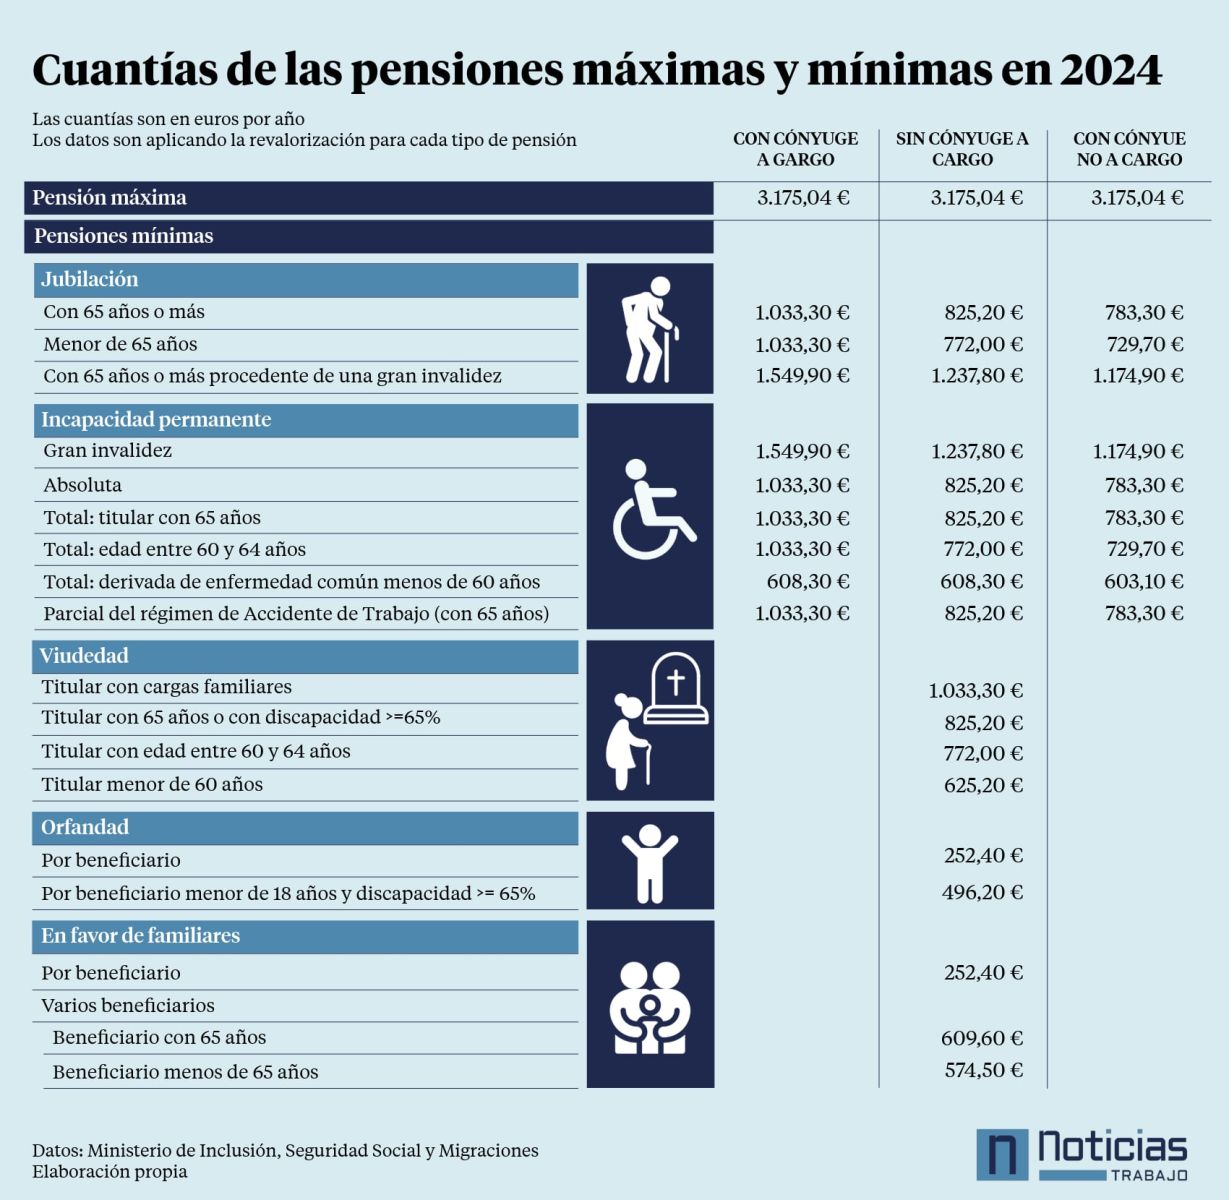 Cuantías mínimas y máximas de las pensiones en 2024